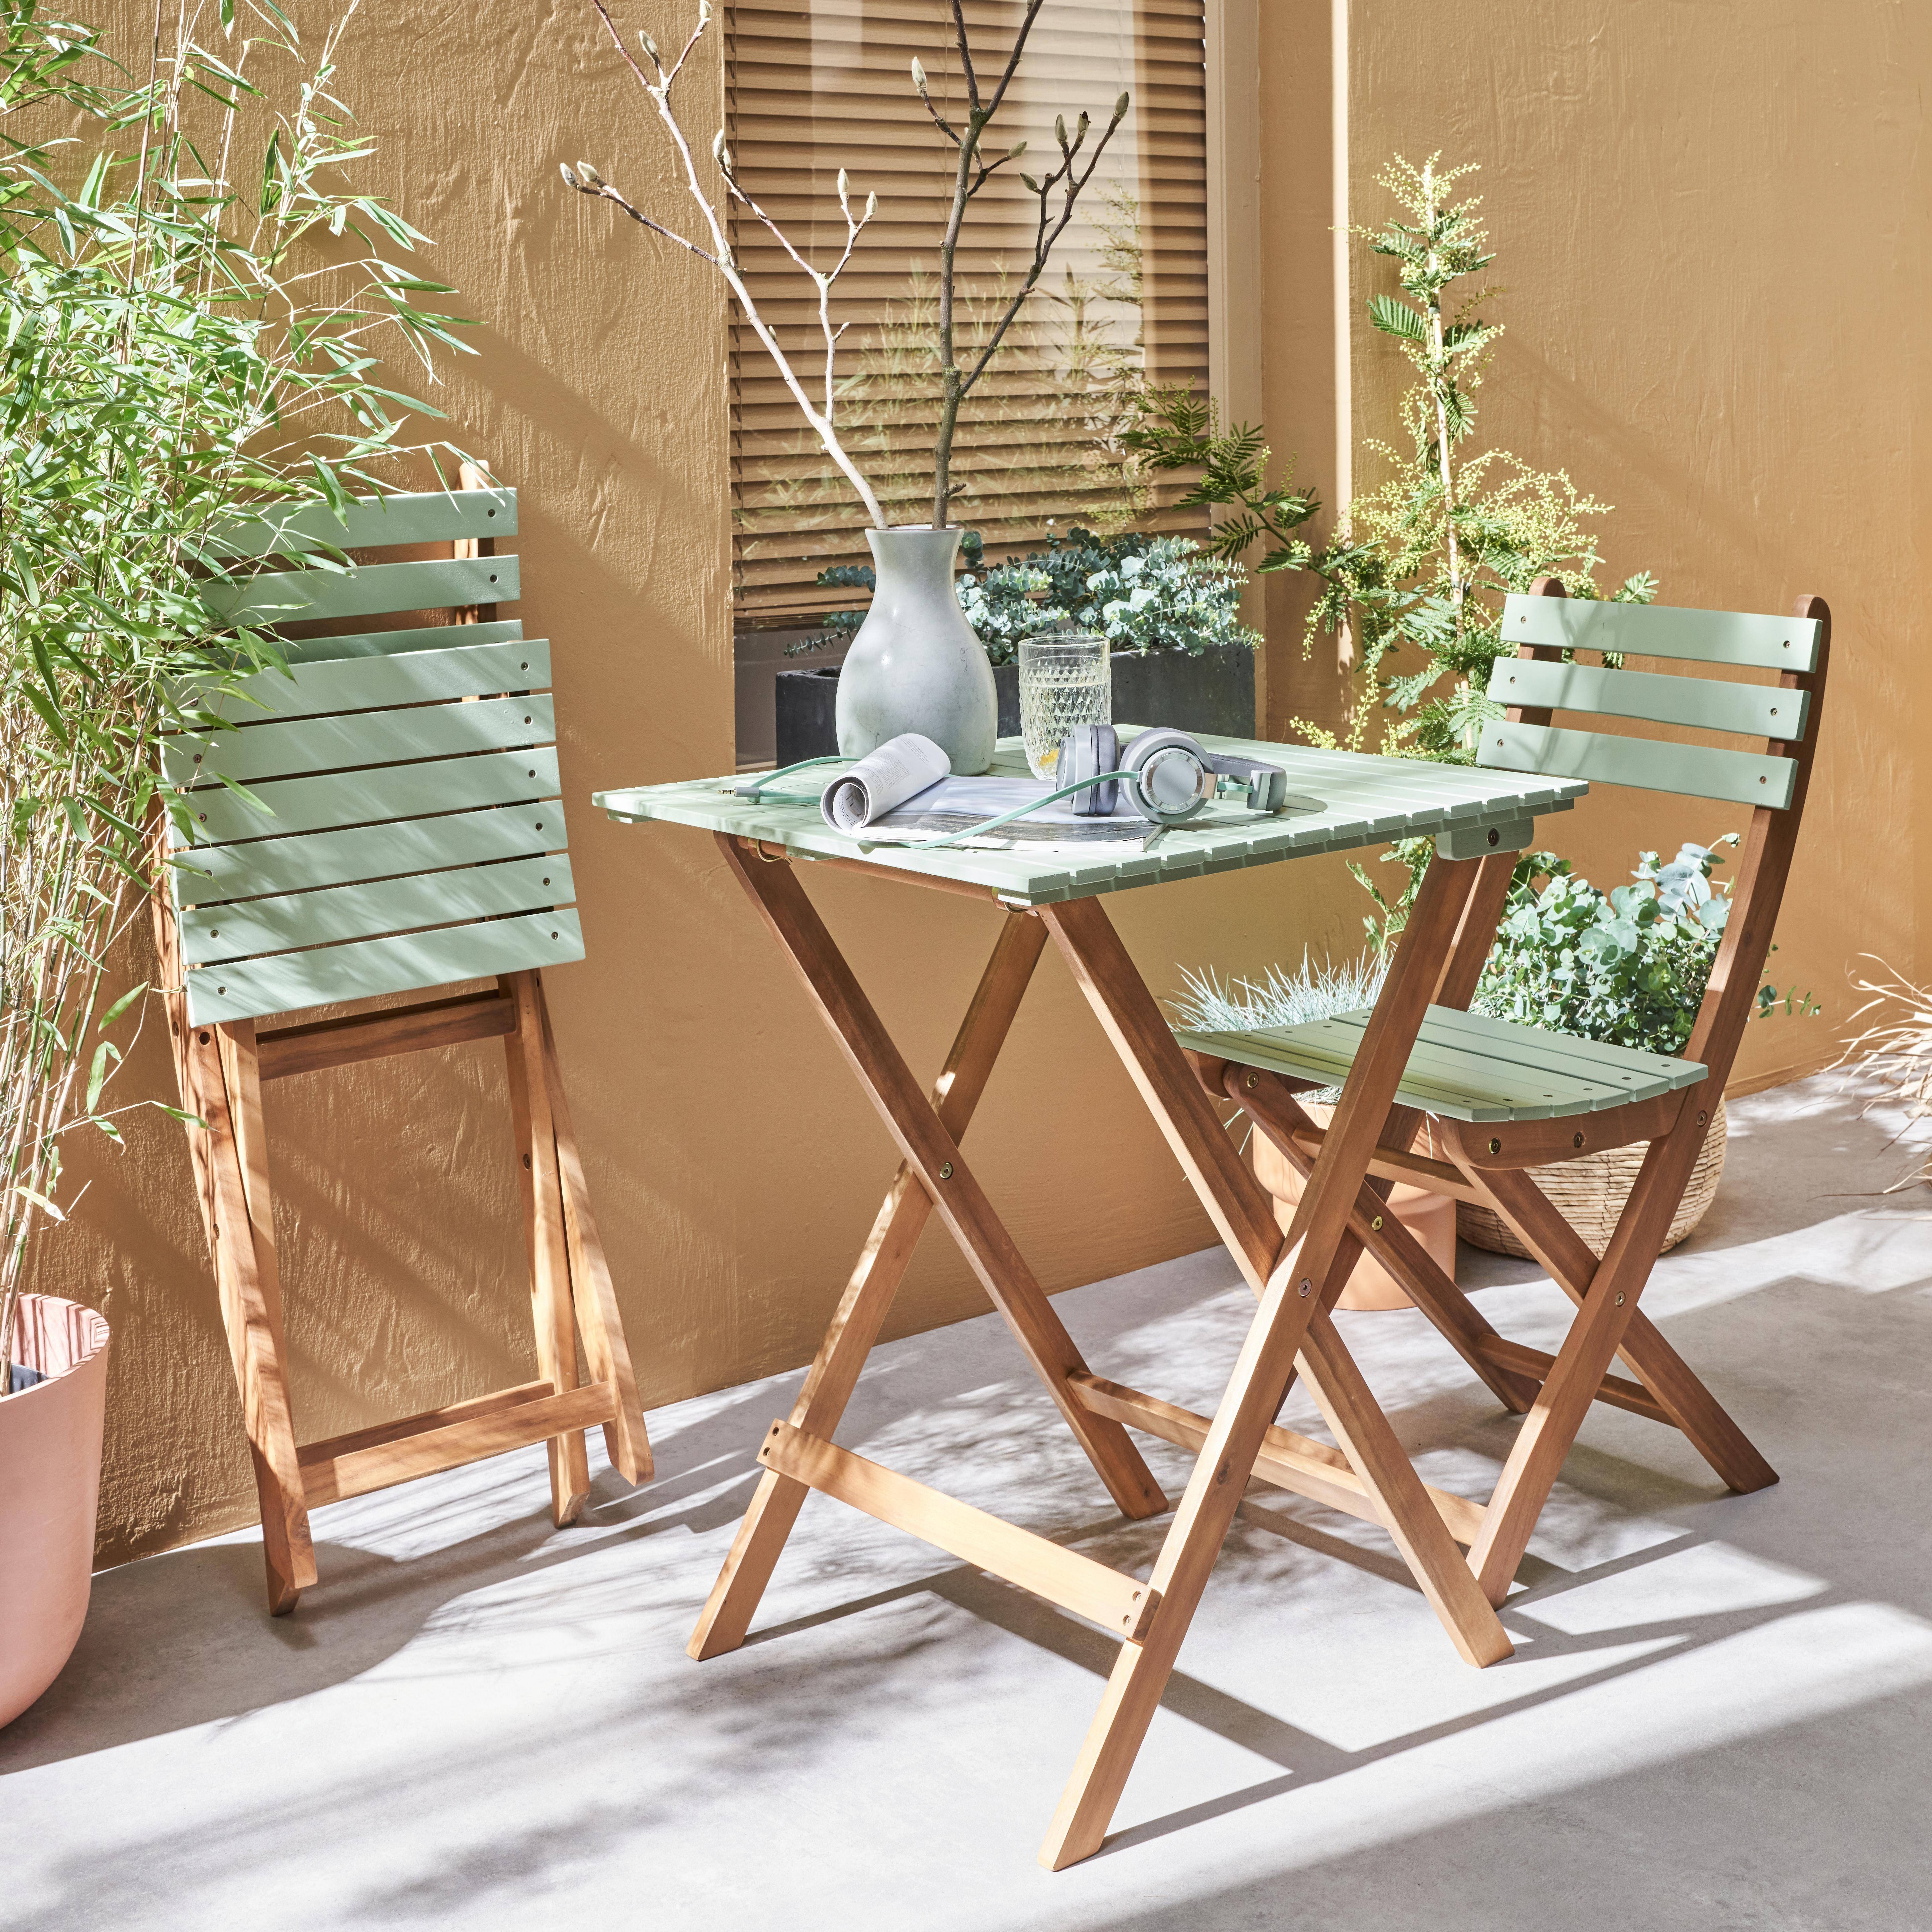 Conjunto de jardín de madera Bistro 60x60cm - Barcelona - verde grisáceo, mesa plegable bicolor con 2 sillas plegables, acacia,sweeek,Photo2